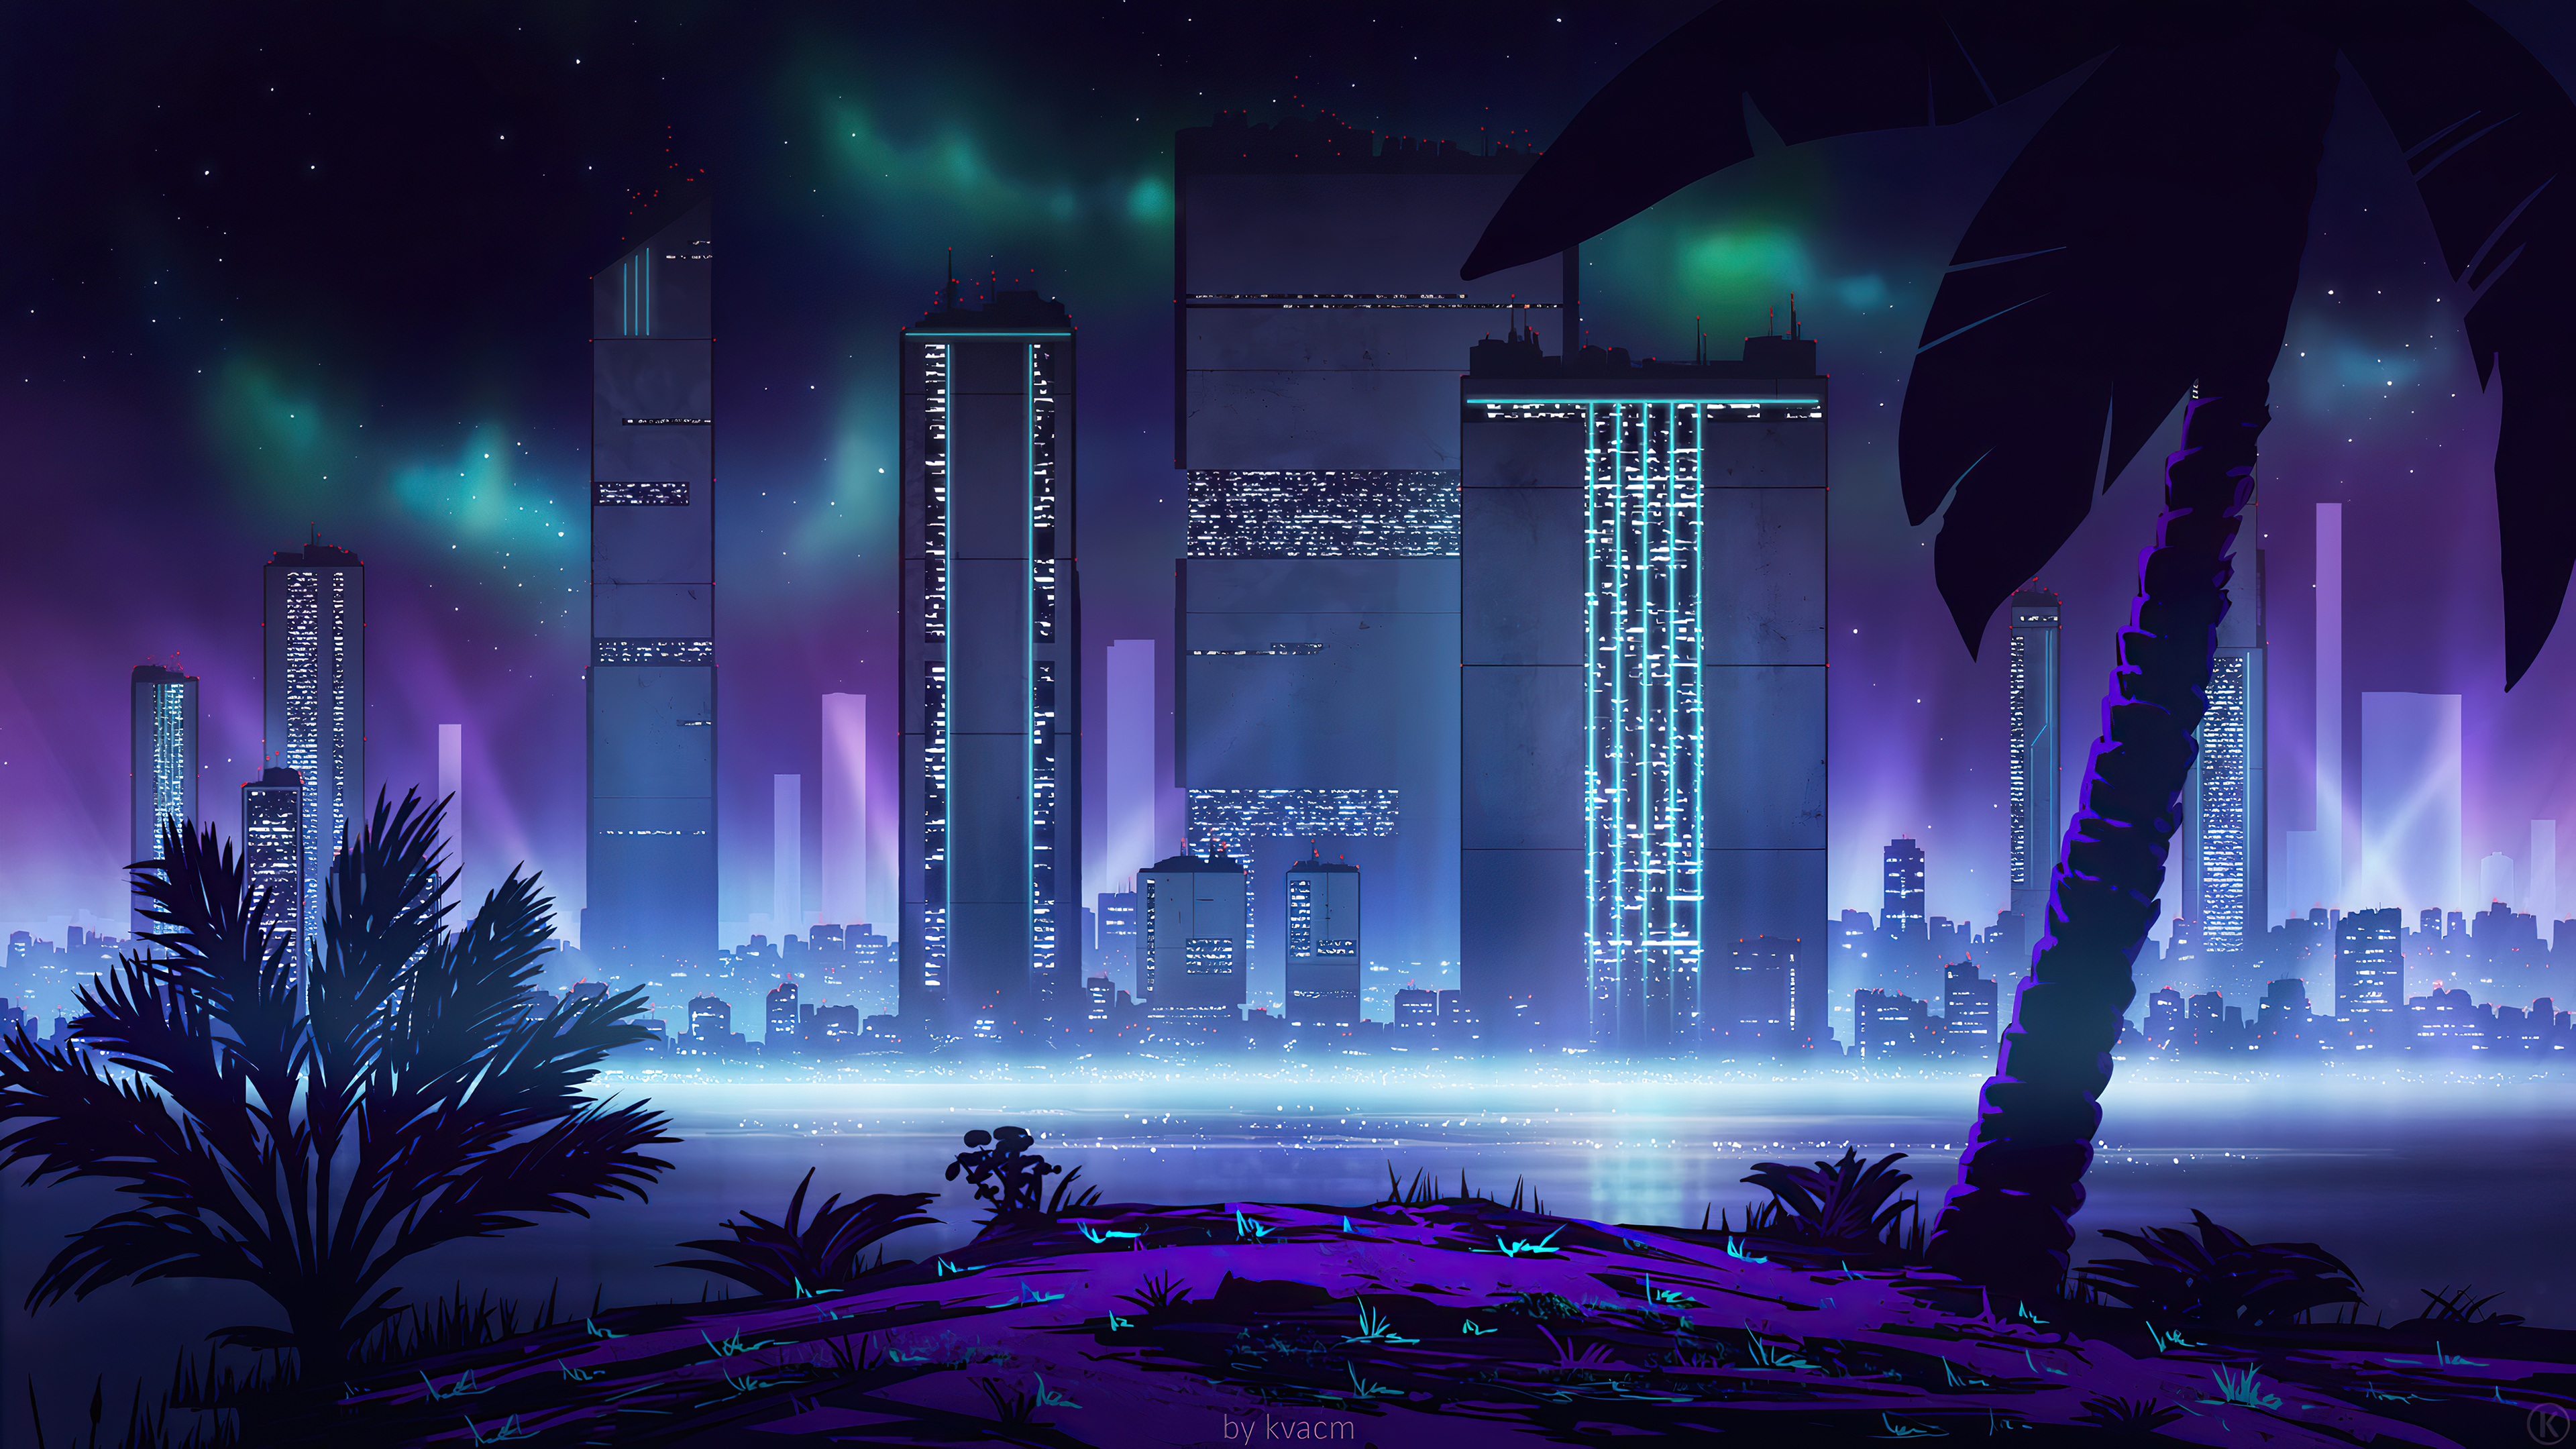 Hình nền 4k đầy màu sắc với đèn neon thành phố siêu viễn tưởng sẽ đưa bạn vào một chuyến phiêu lưu đầy thú vị. Với các tòa nhà cao chọc trời, đèn neon rực rỡ và xe cộ đang cất cánh trên con đường đầy sức sống. Hãy tận hưởng một phần không gian tưởng tượng huyền bí và đầy màu sắc của thành phố đêm.